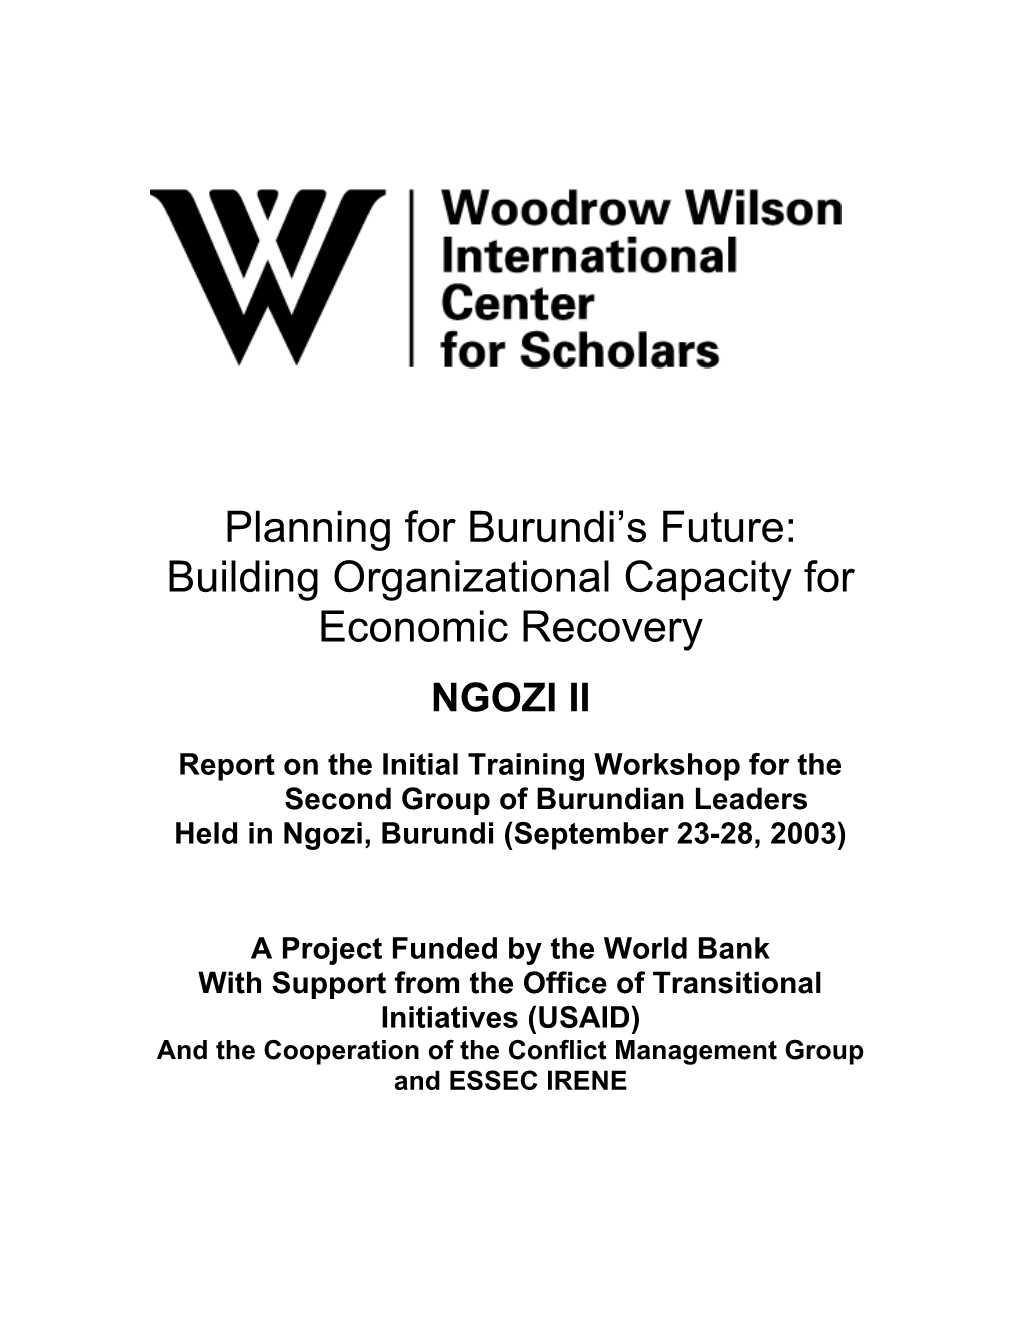 Report on Workshop I